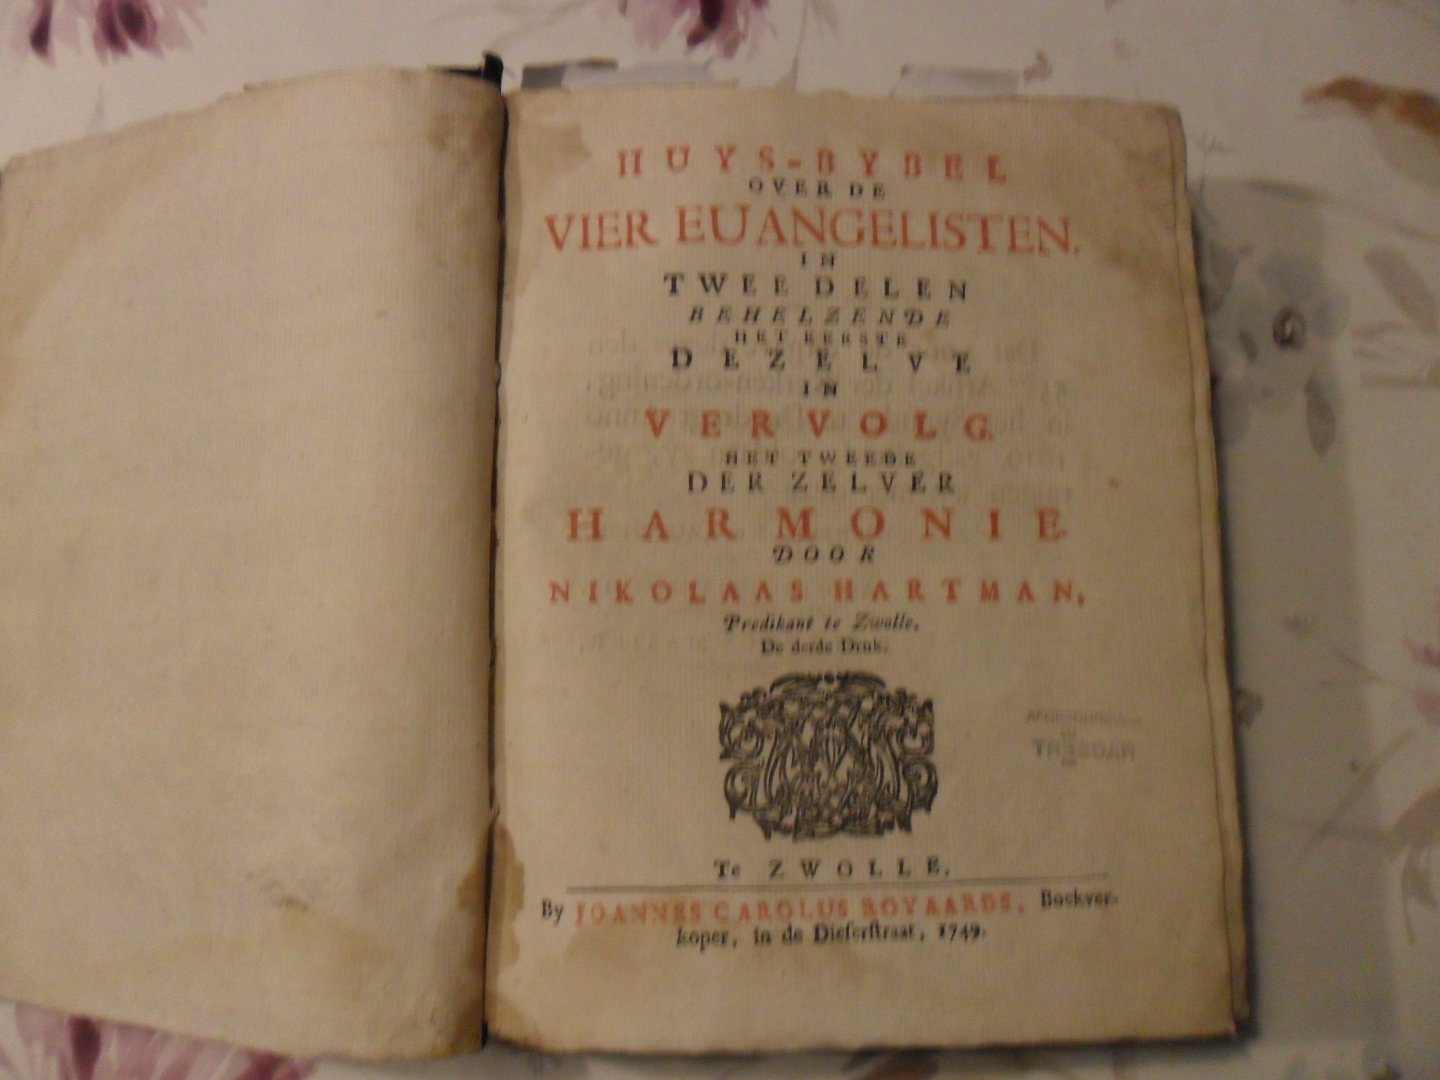 Hartman Nikolaas - Huys-Bybel over de vier euangelsiten in twee delen behelzende het eerste dezelve in vervolg het tweede deel der zelver gamonie